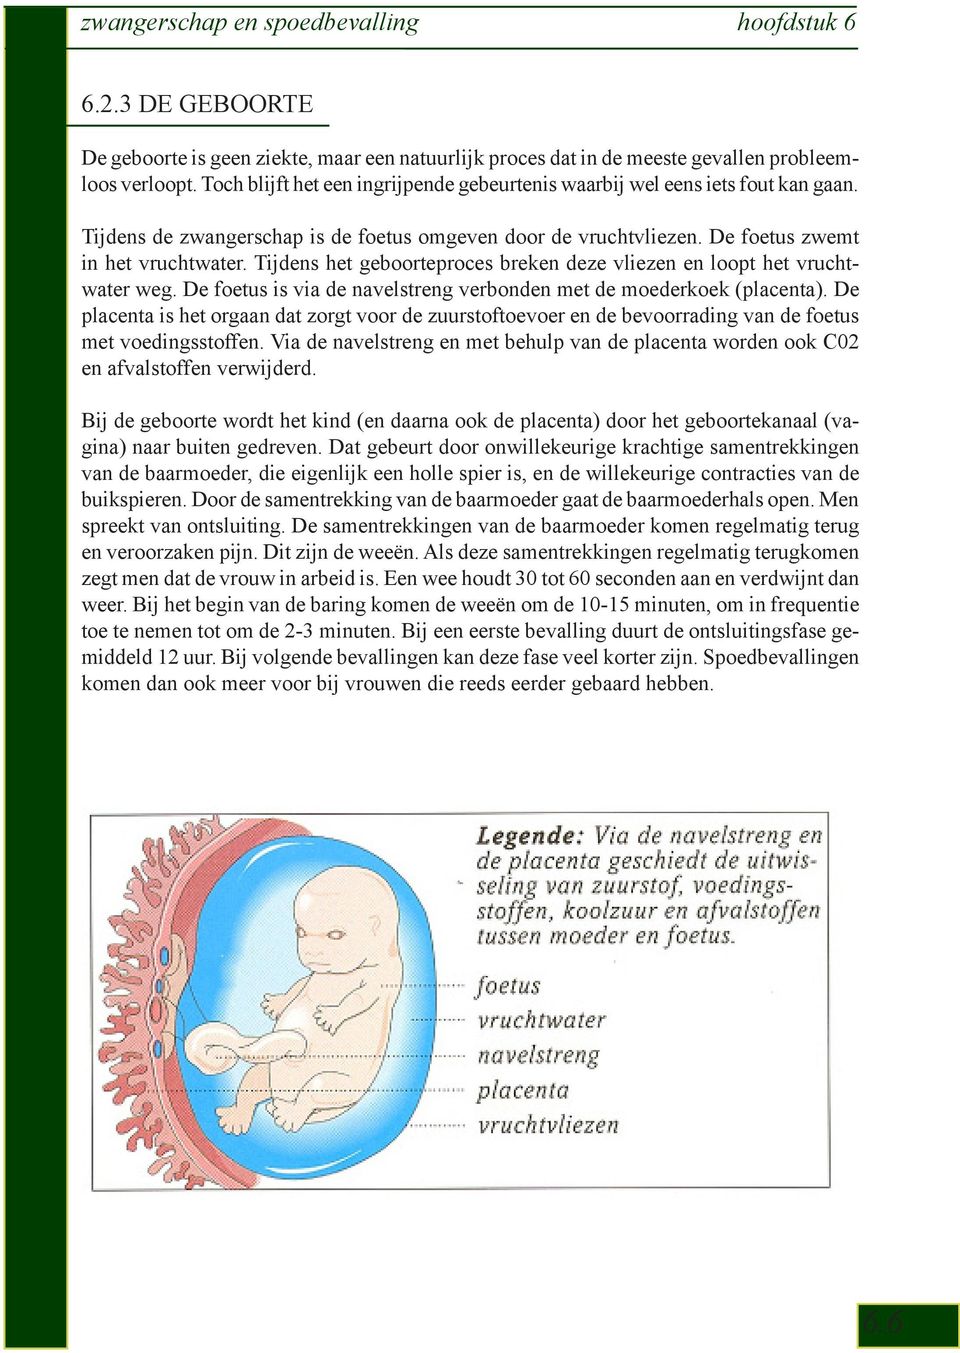 Tijdens het geboorteproces breken deze vliezen en loopt het vruchtwater weg. De foetus is via de navelstreng verbonden met de moederkoek (placenta).